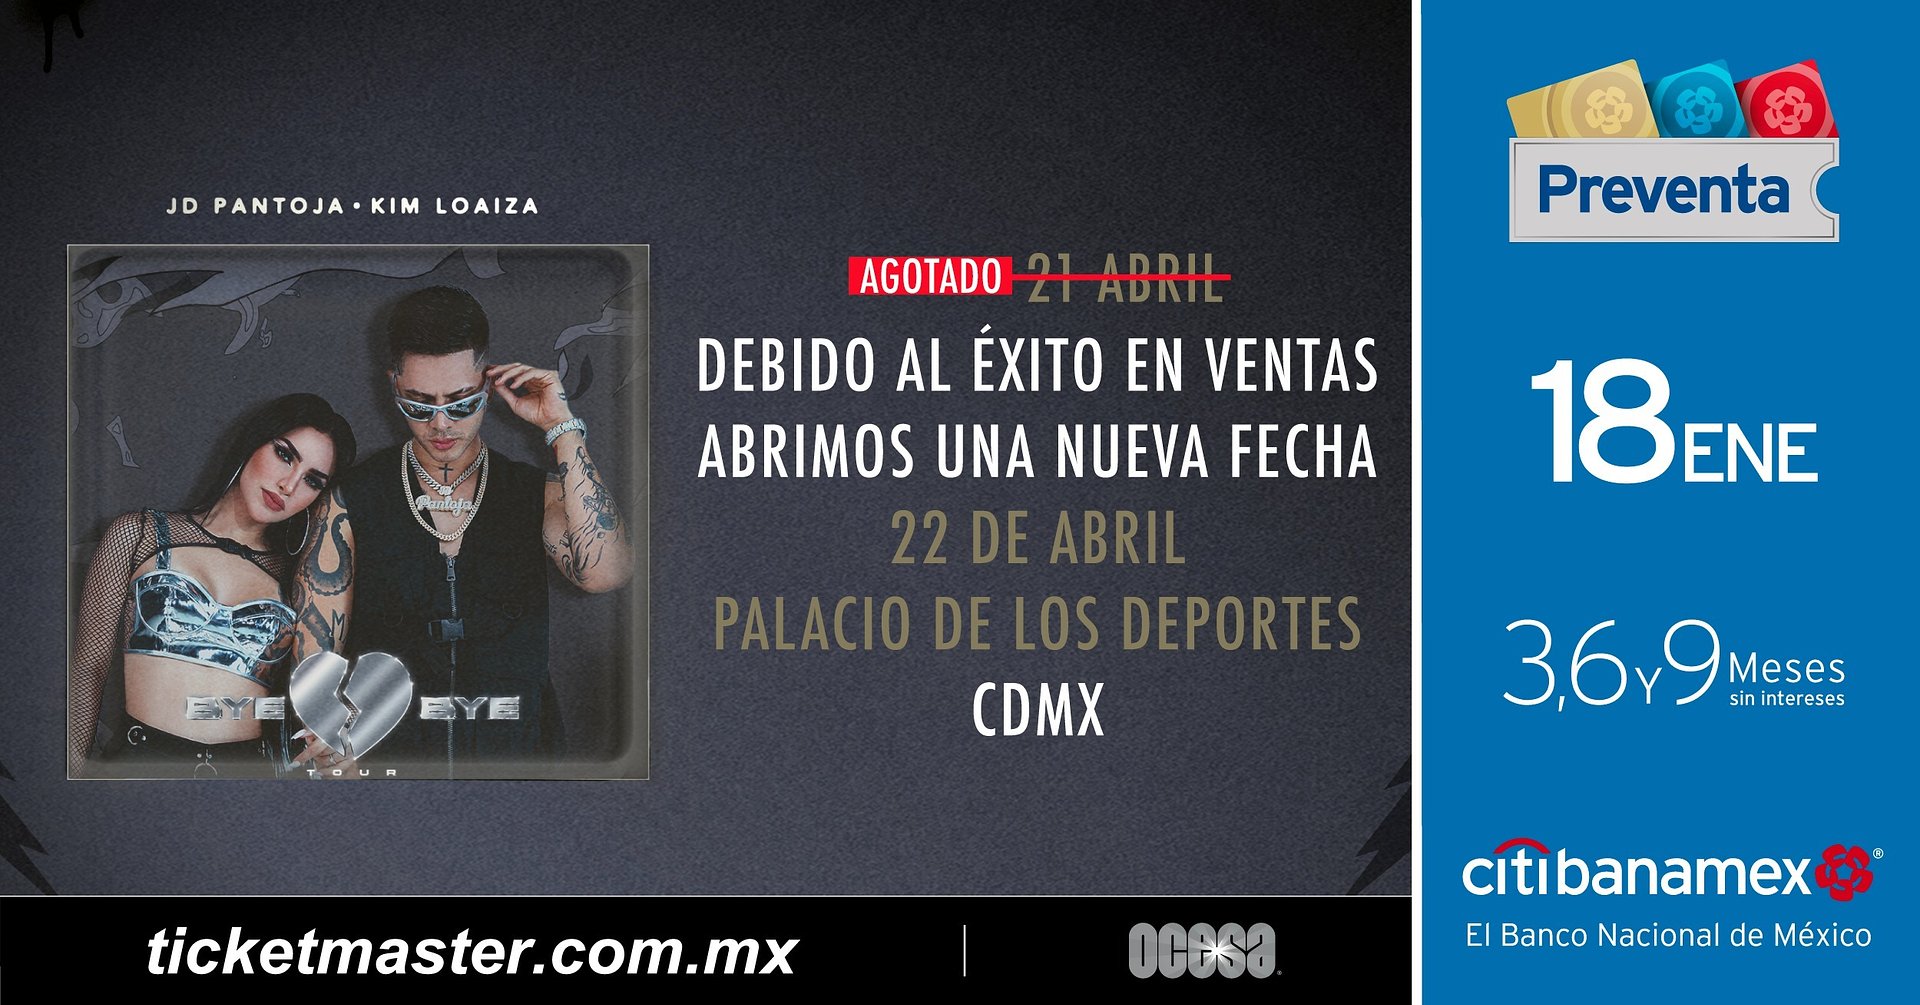 Kim Loaiza y JD Pantoja abren nuevas fechas en CDMX y Monterrey